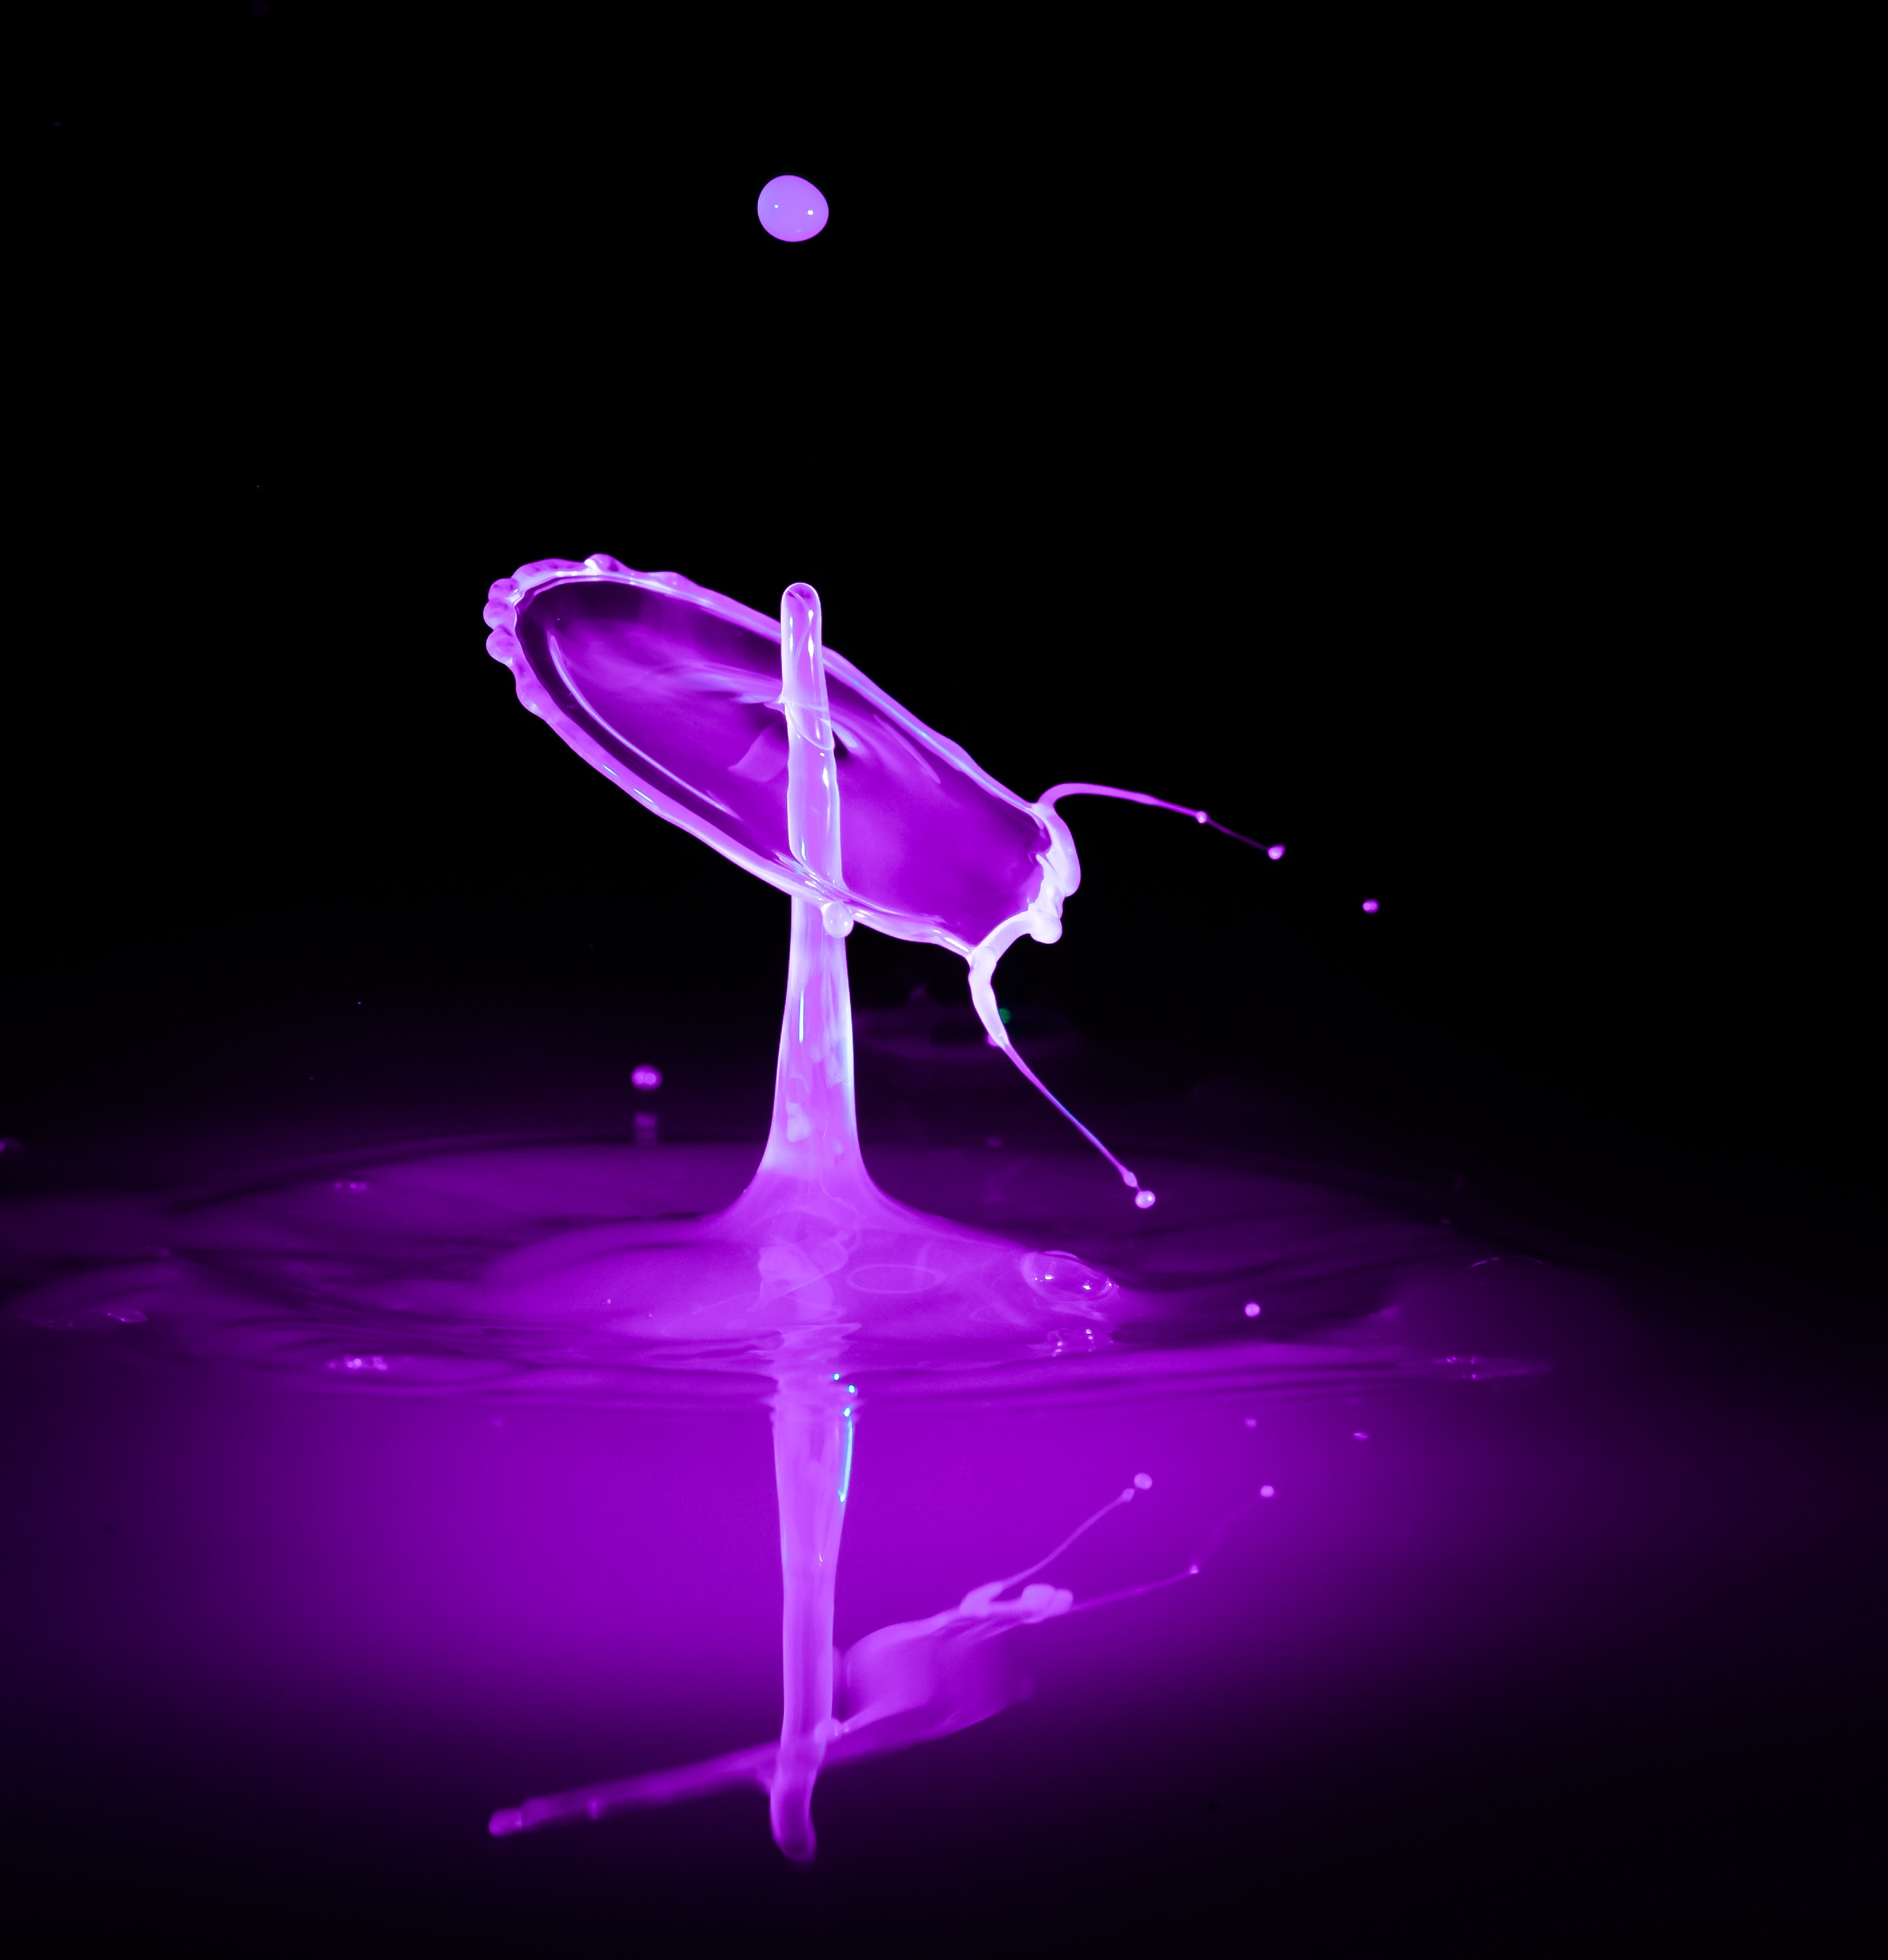 drops, violet, splash, macro, spray, liquid, purple